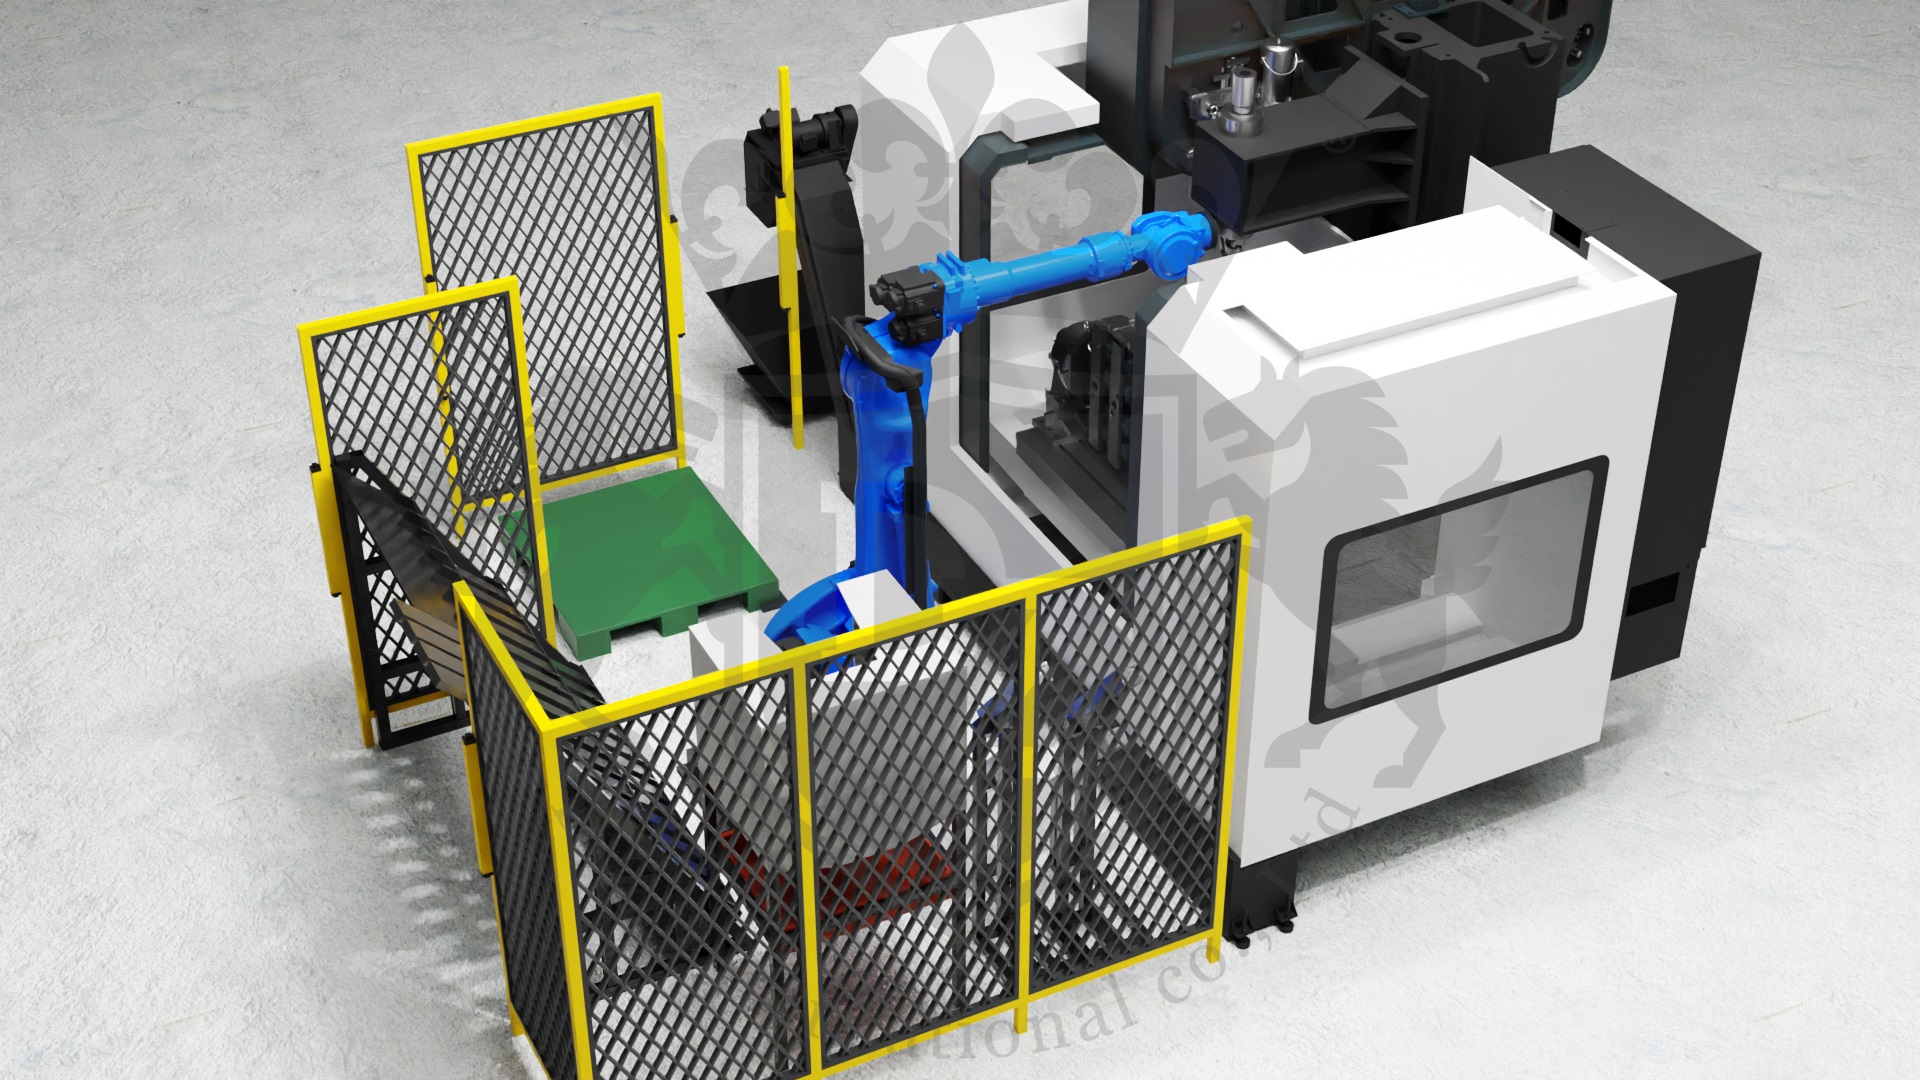 銑床加工機結合派單系統及智慧料倉上下料自動化